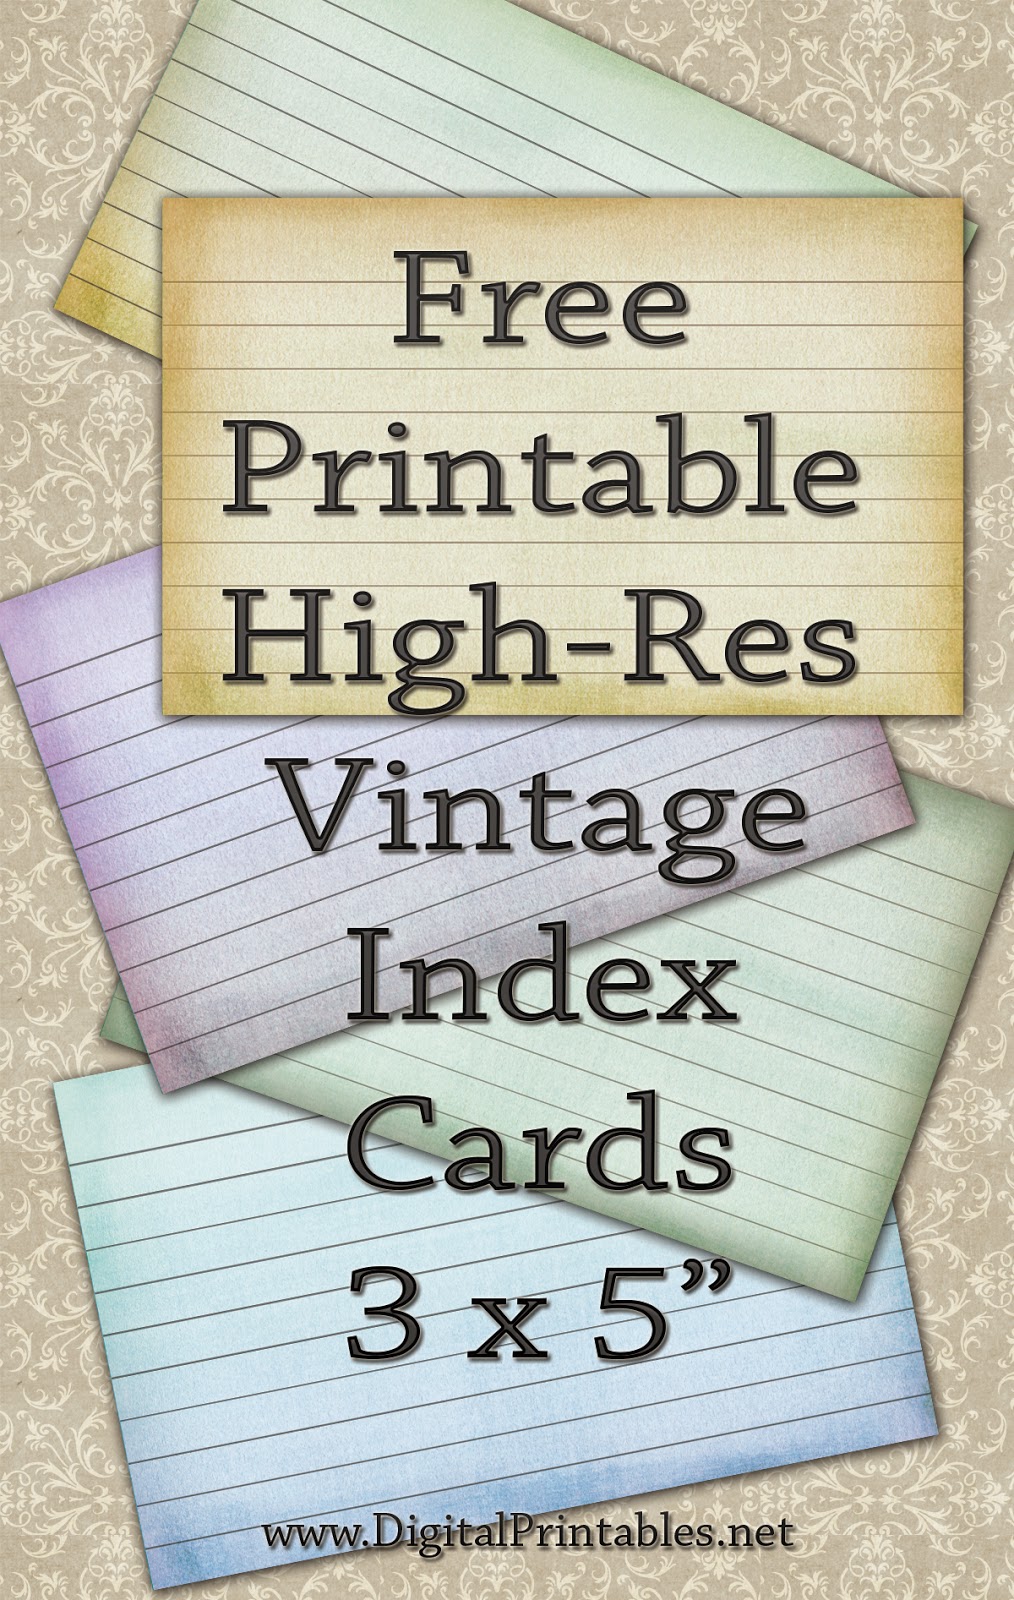 digital-printables-free-printable-index-cards-vintage-look-high-res